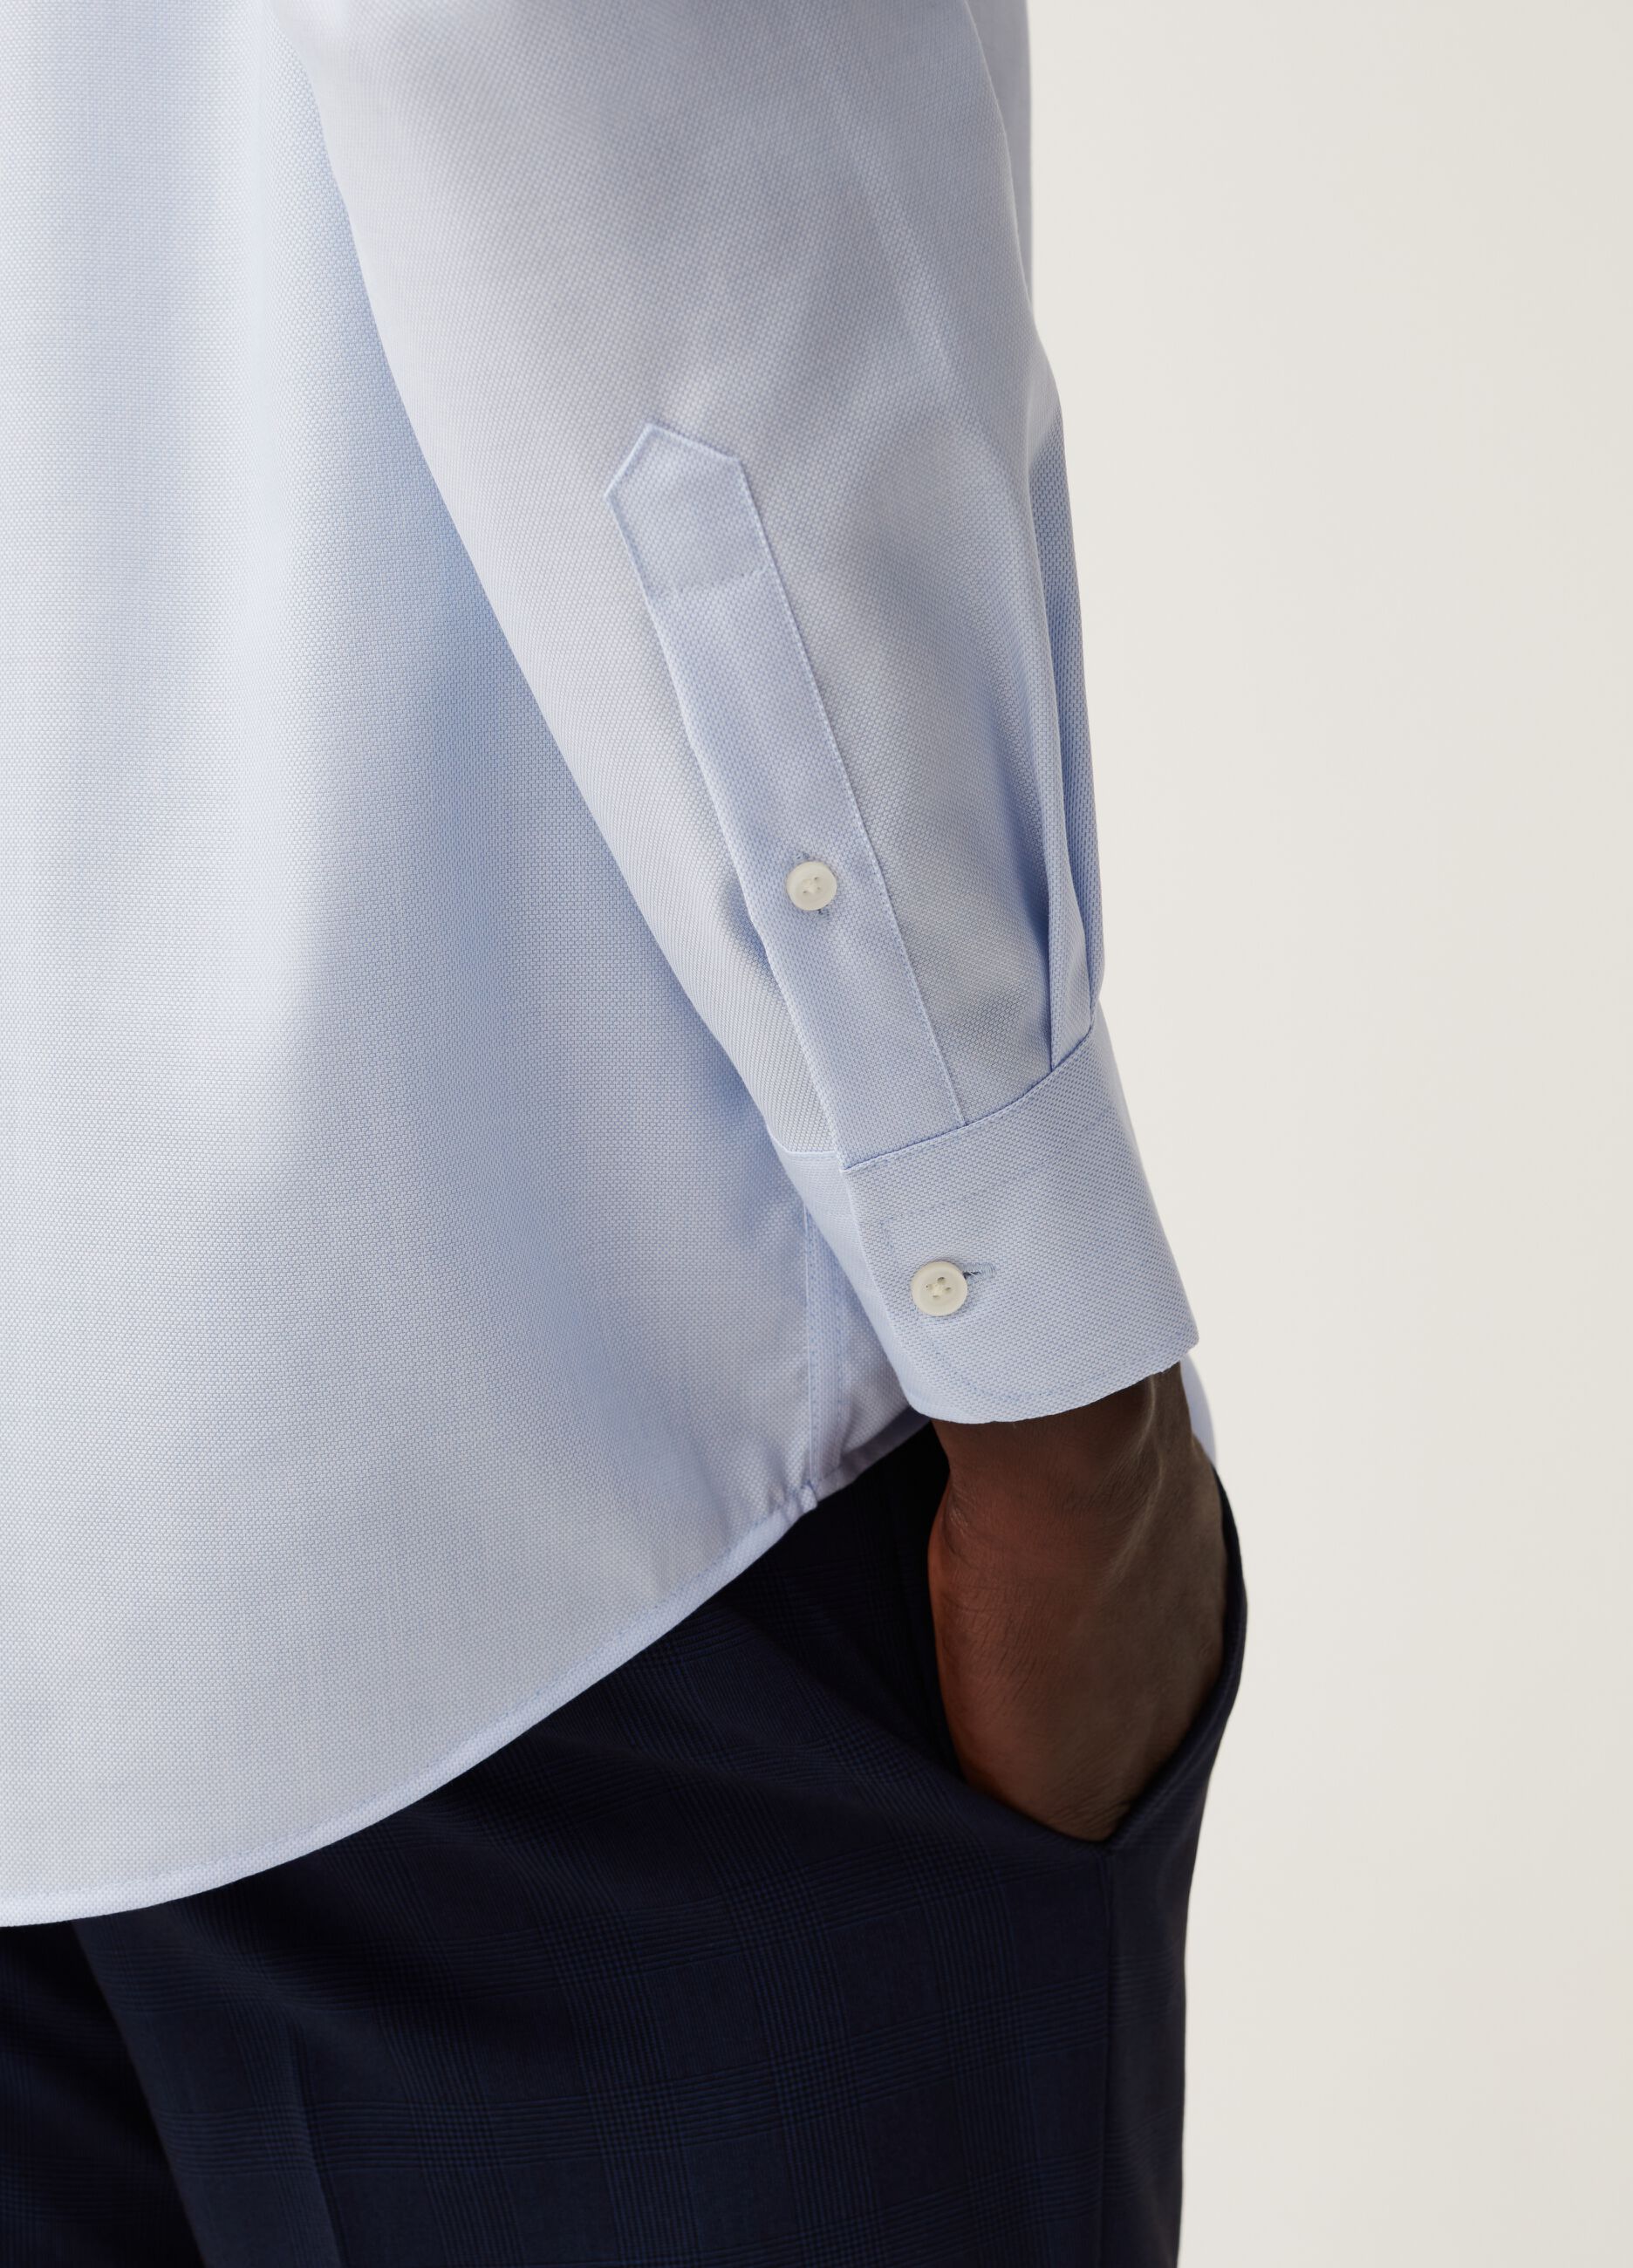 Camisa regular fit de algodón sin plancha en color liso